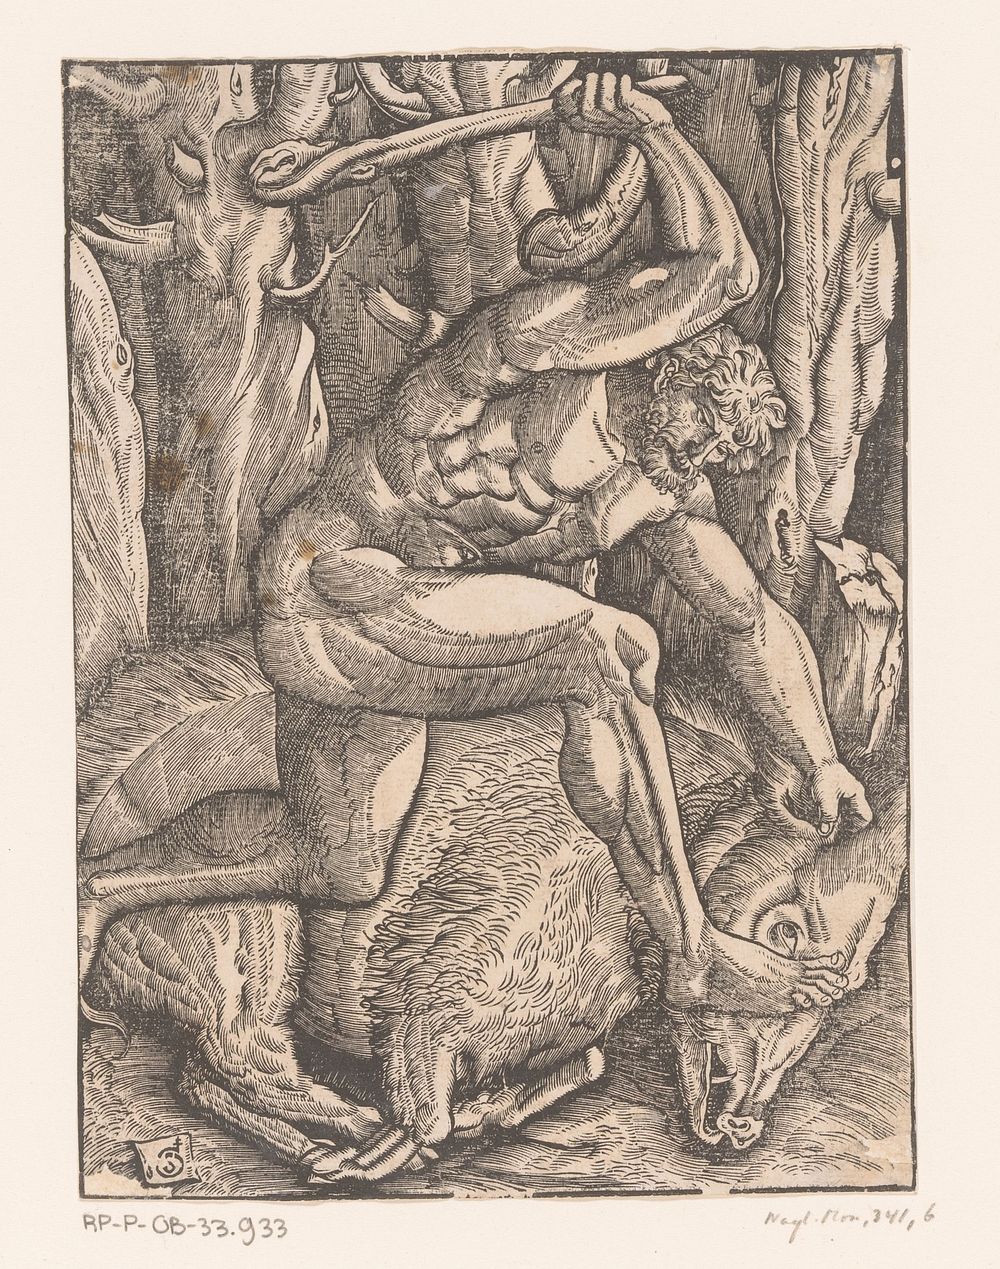 Hercules vangt het zwijn van Erymanthus (c. 1528) by Gabriel Salmon